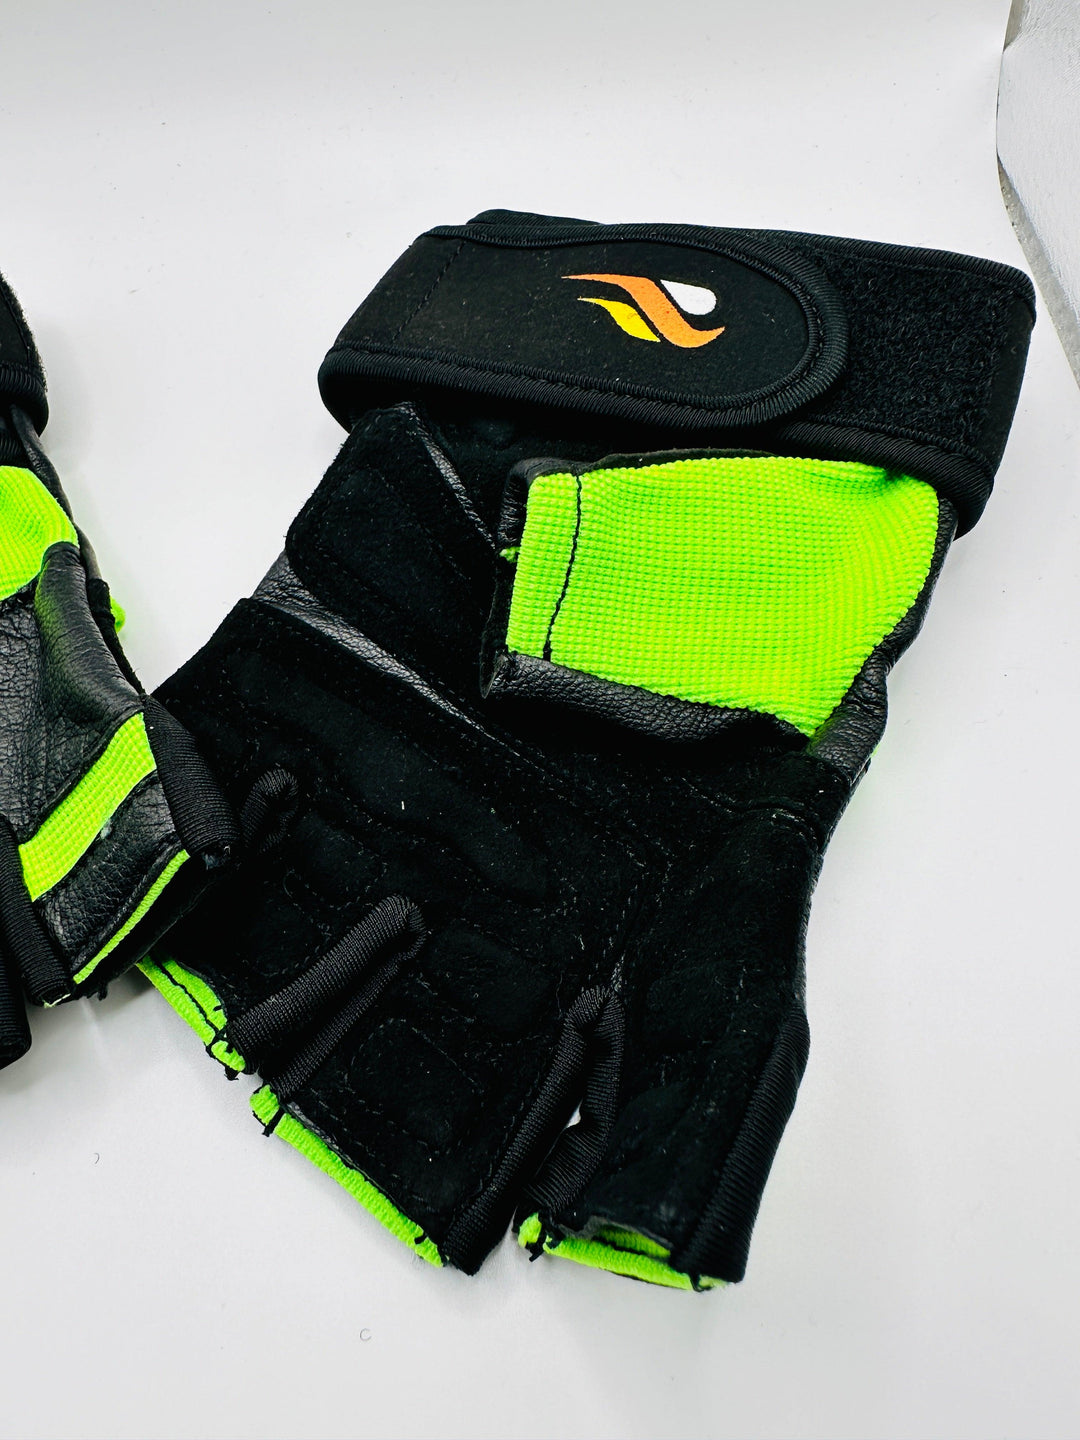 Men's Wrist Wrap Gloves - Neon - GYMRUN Activewear